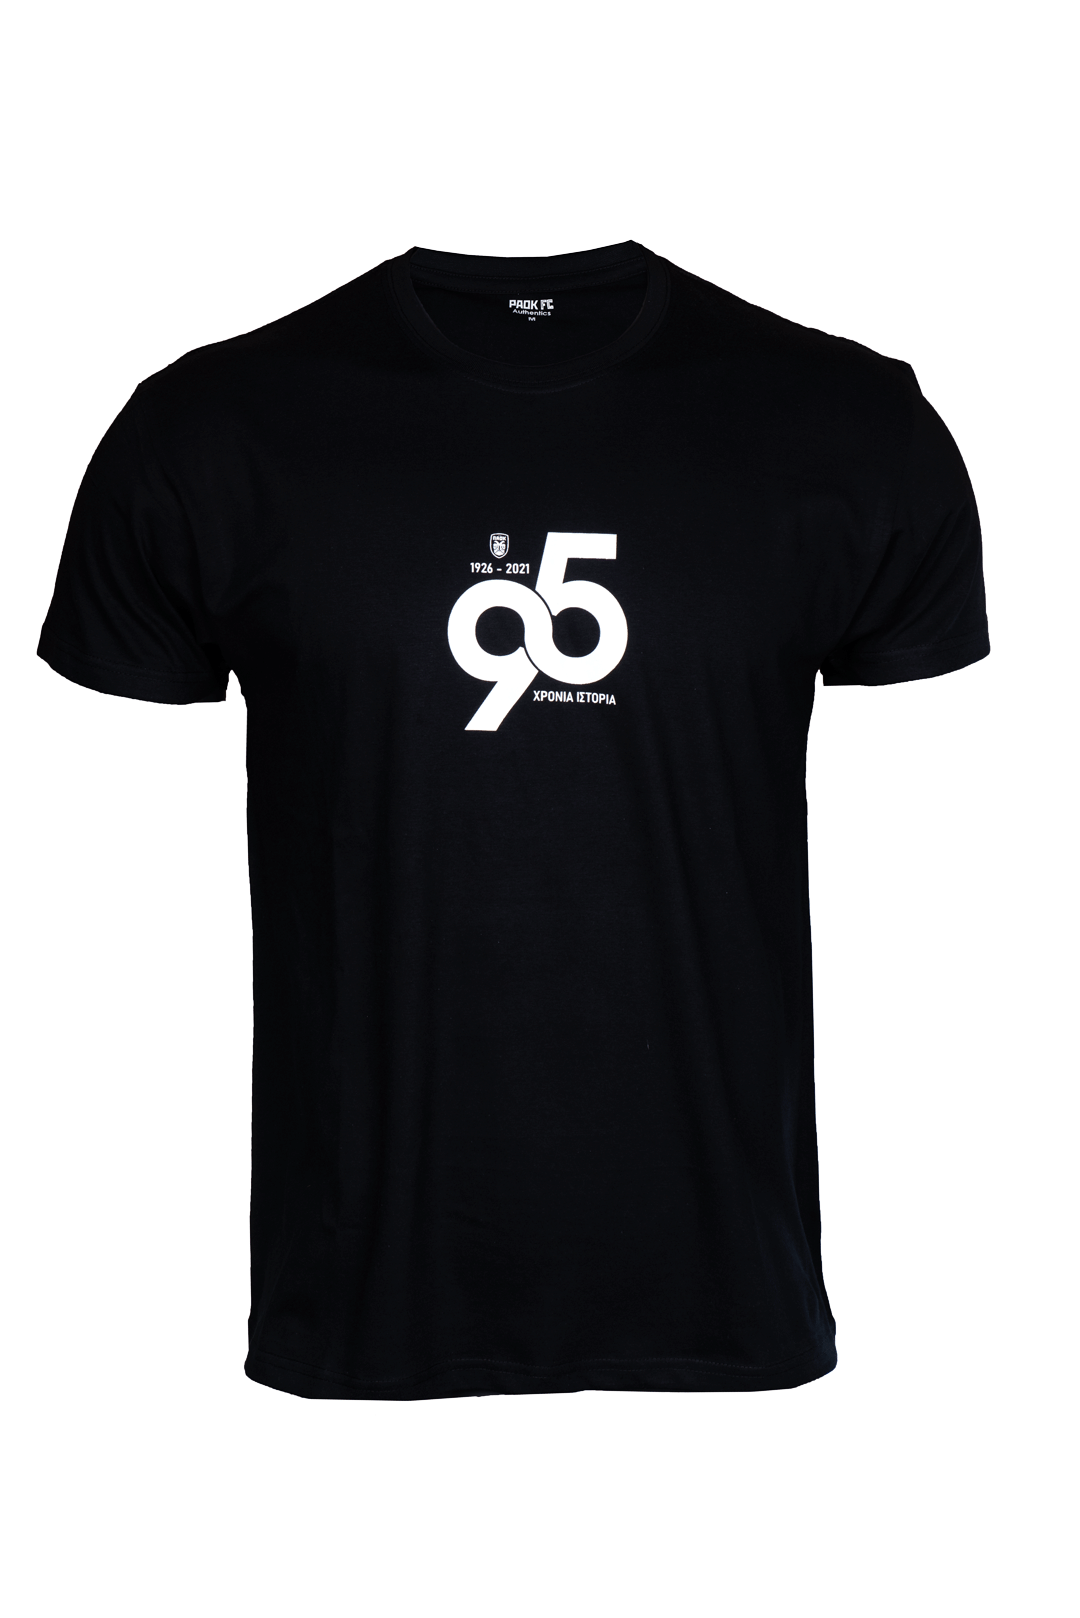 T-shirt ΠΑΟΚ 95 Χρόνια